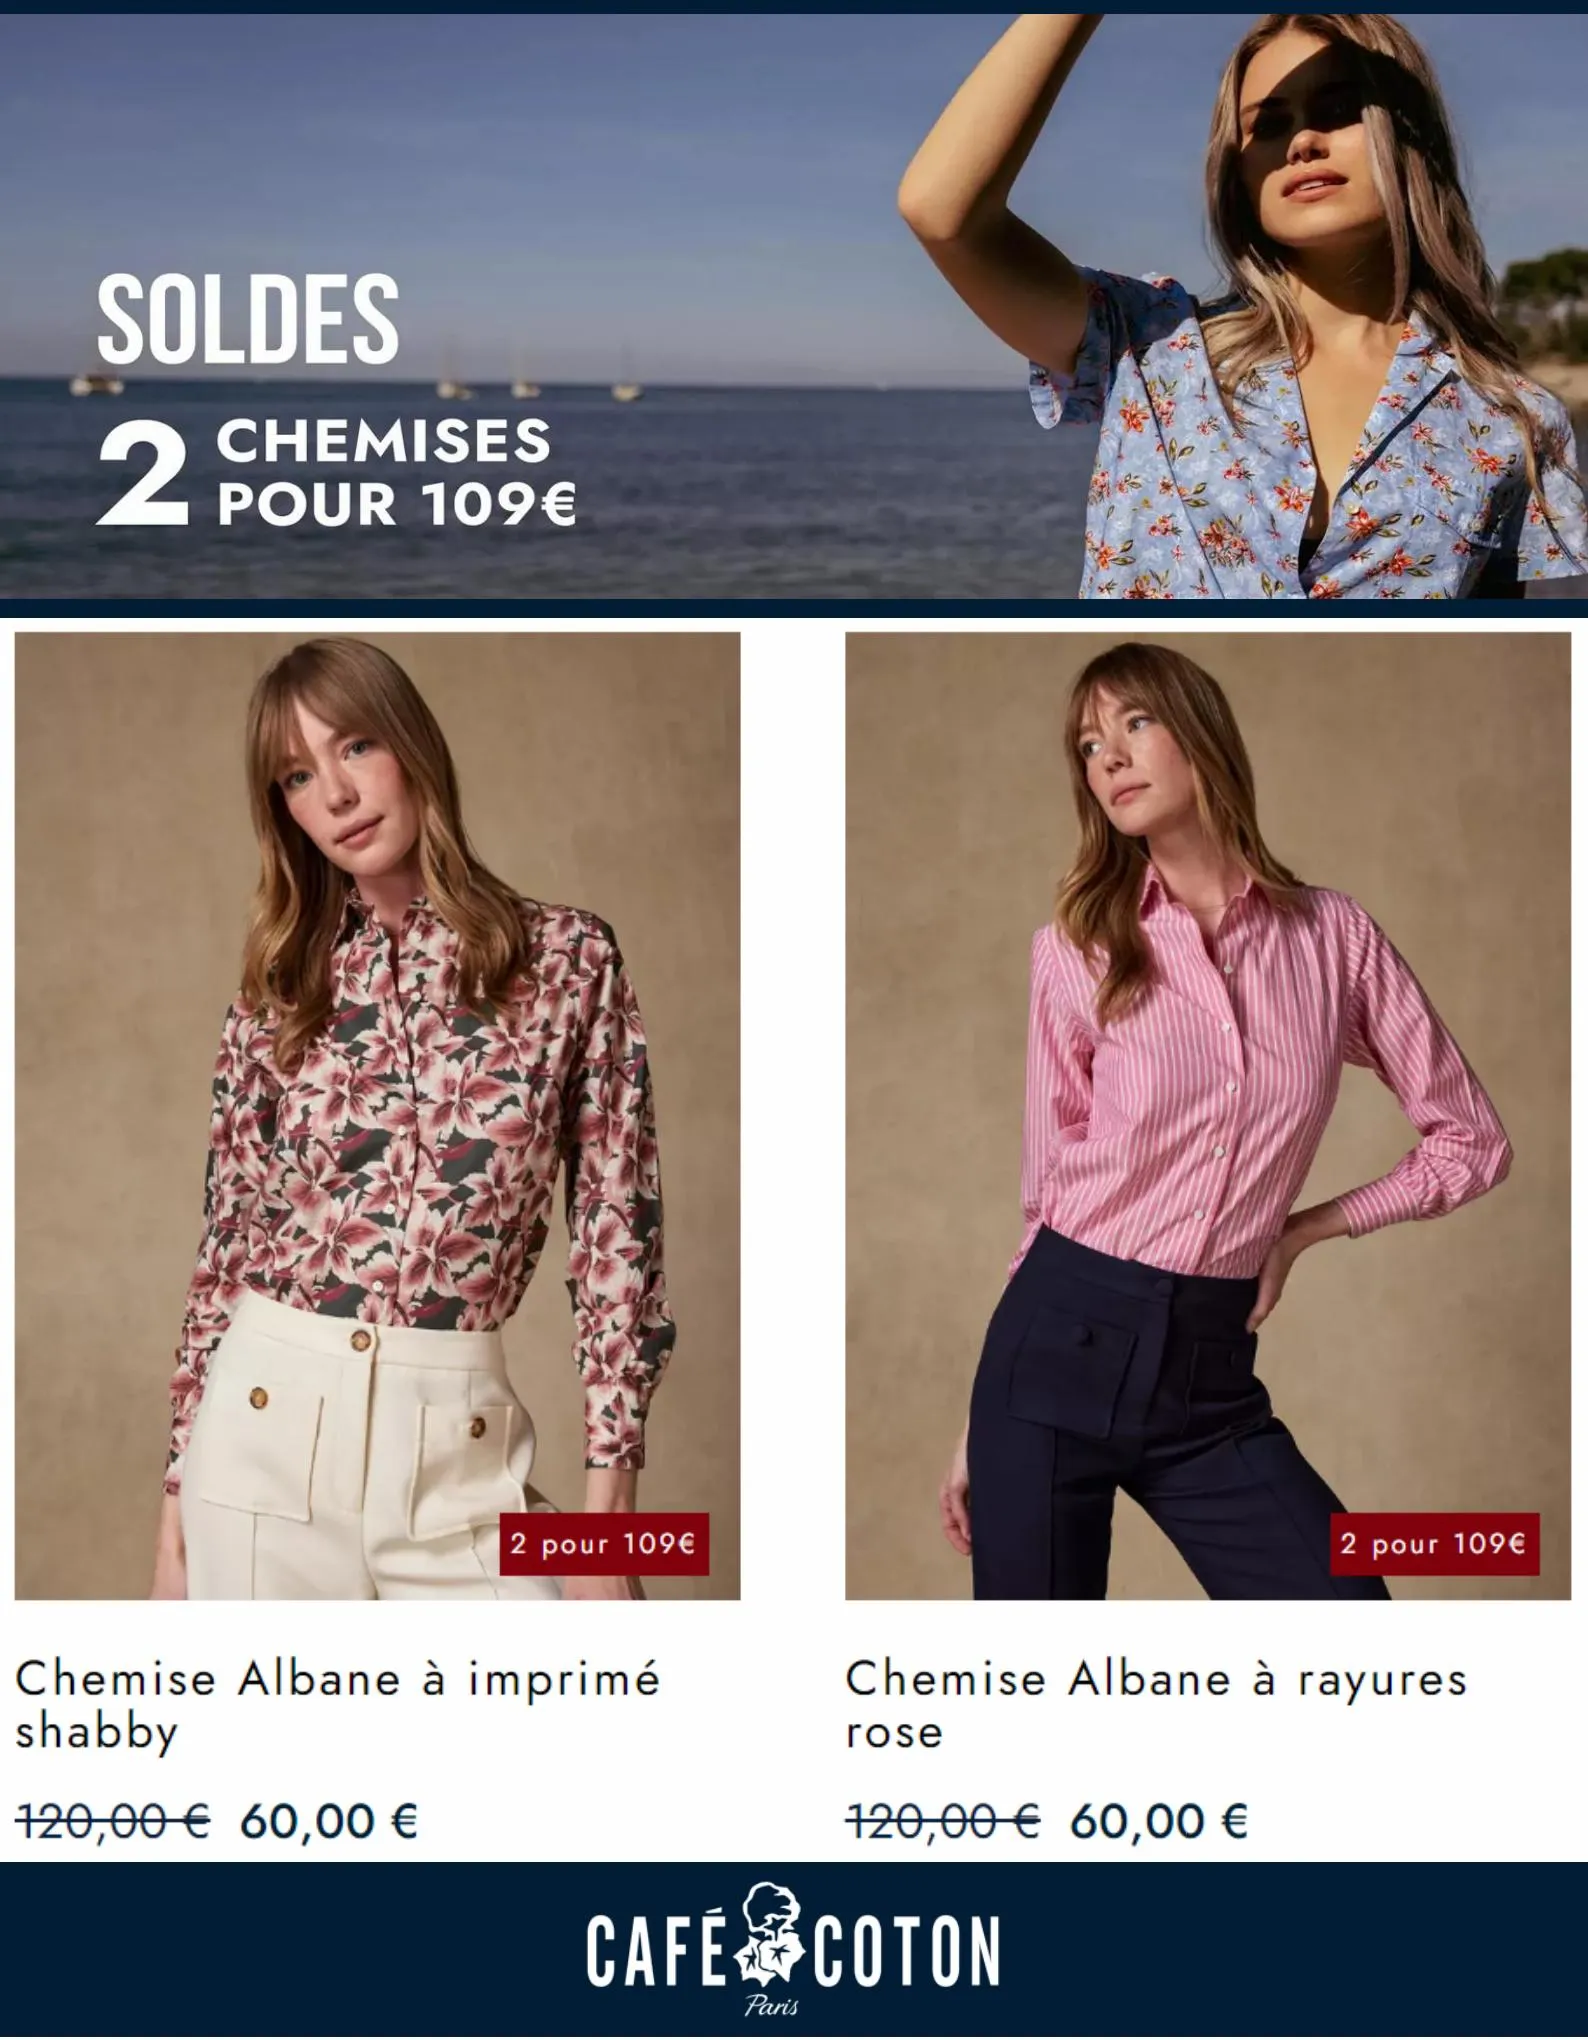 Catalogue Soldes 2 Chemises pour 109€, page 00006